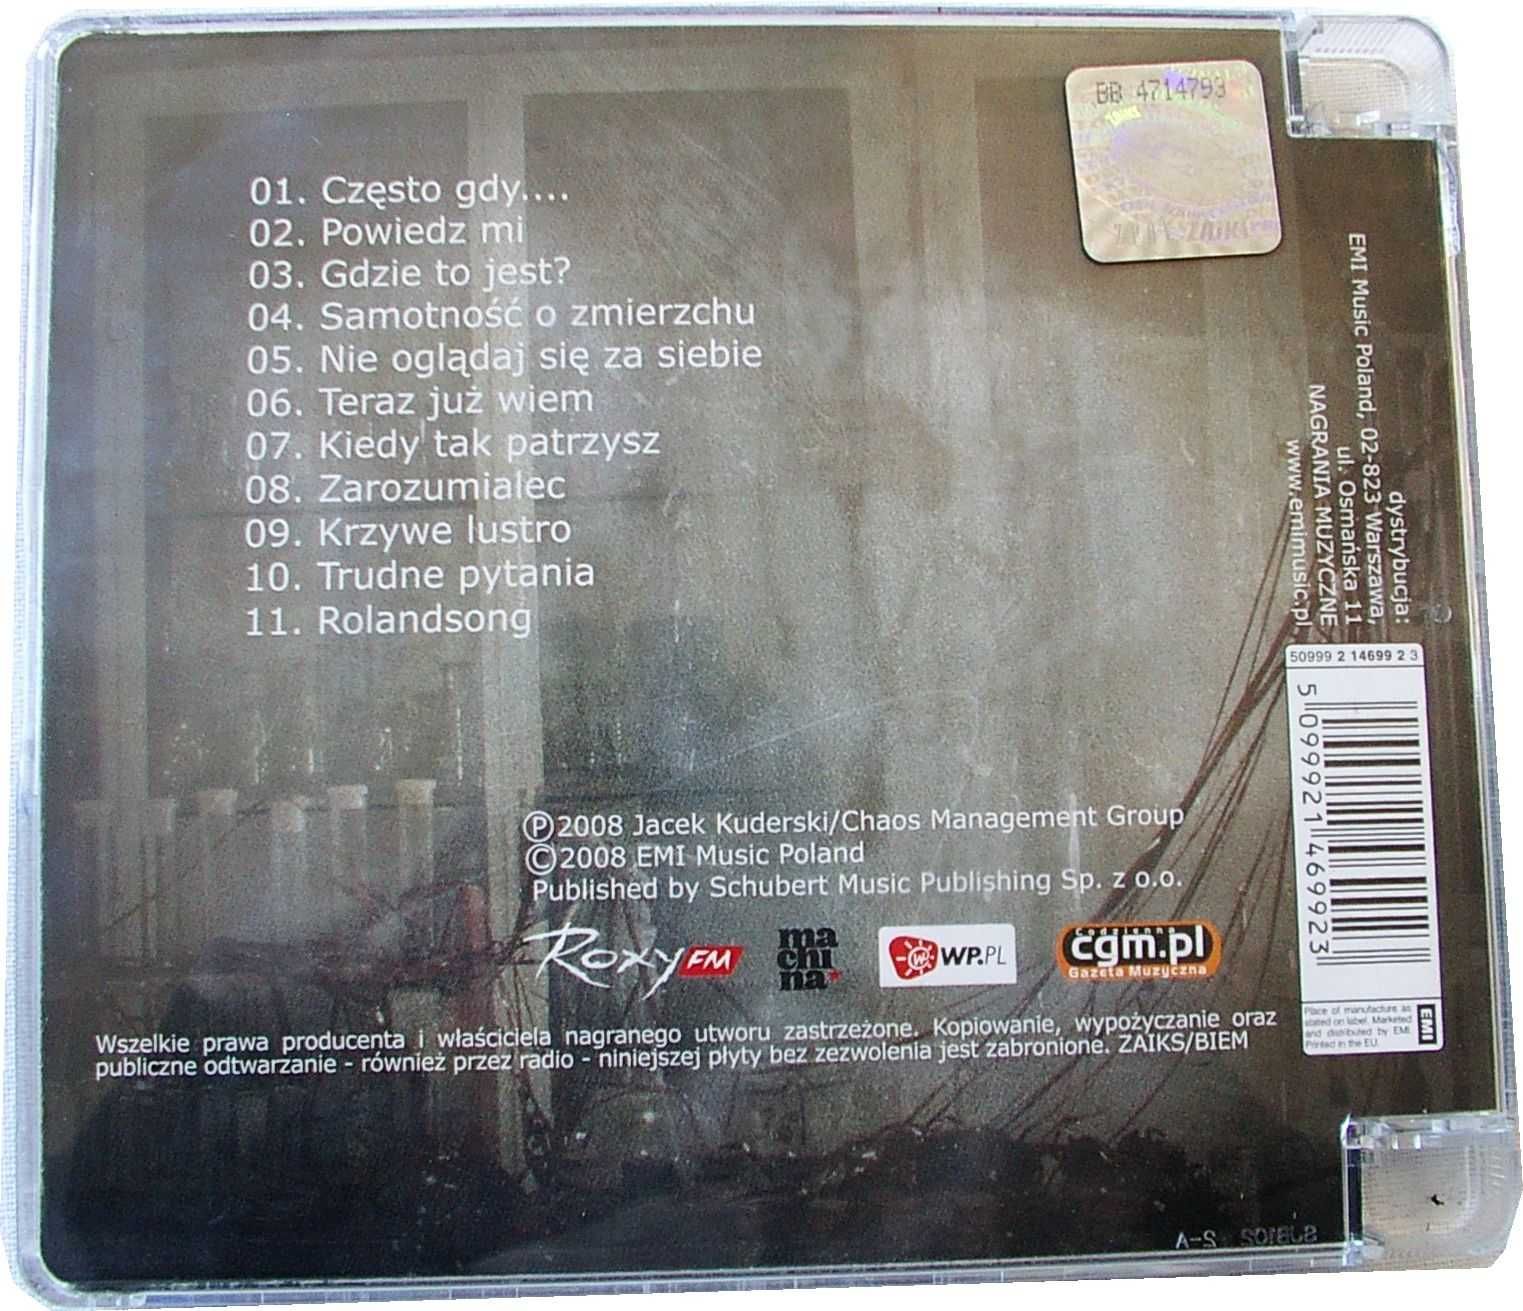 XPERYMENT 2004 - 2007 - Jacek Kuderski - płyta CD Myslovitz AUTOGRAF